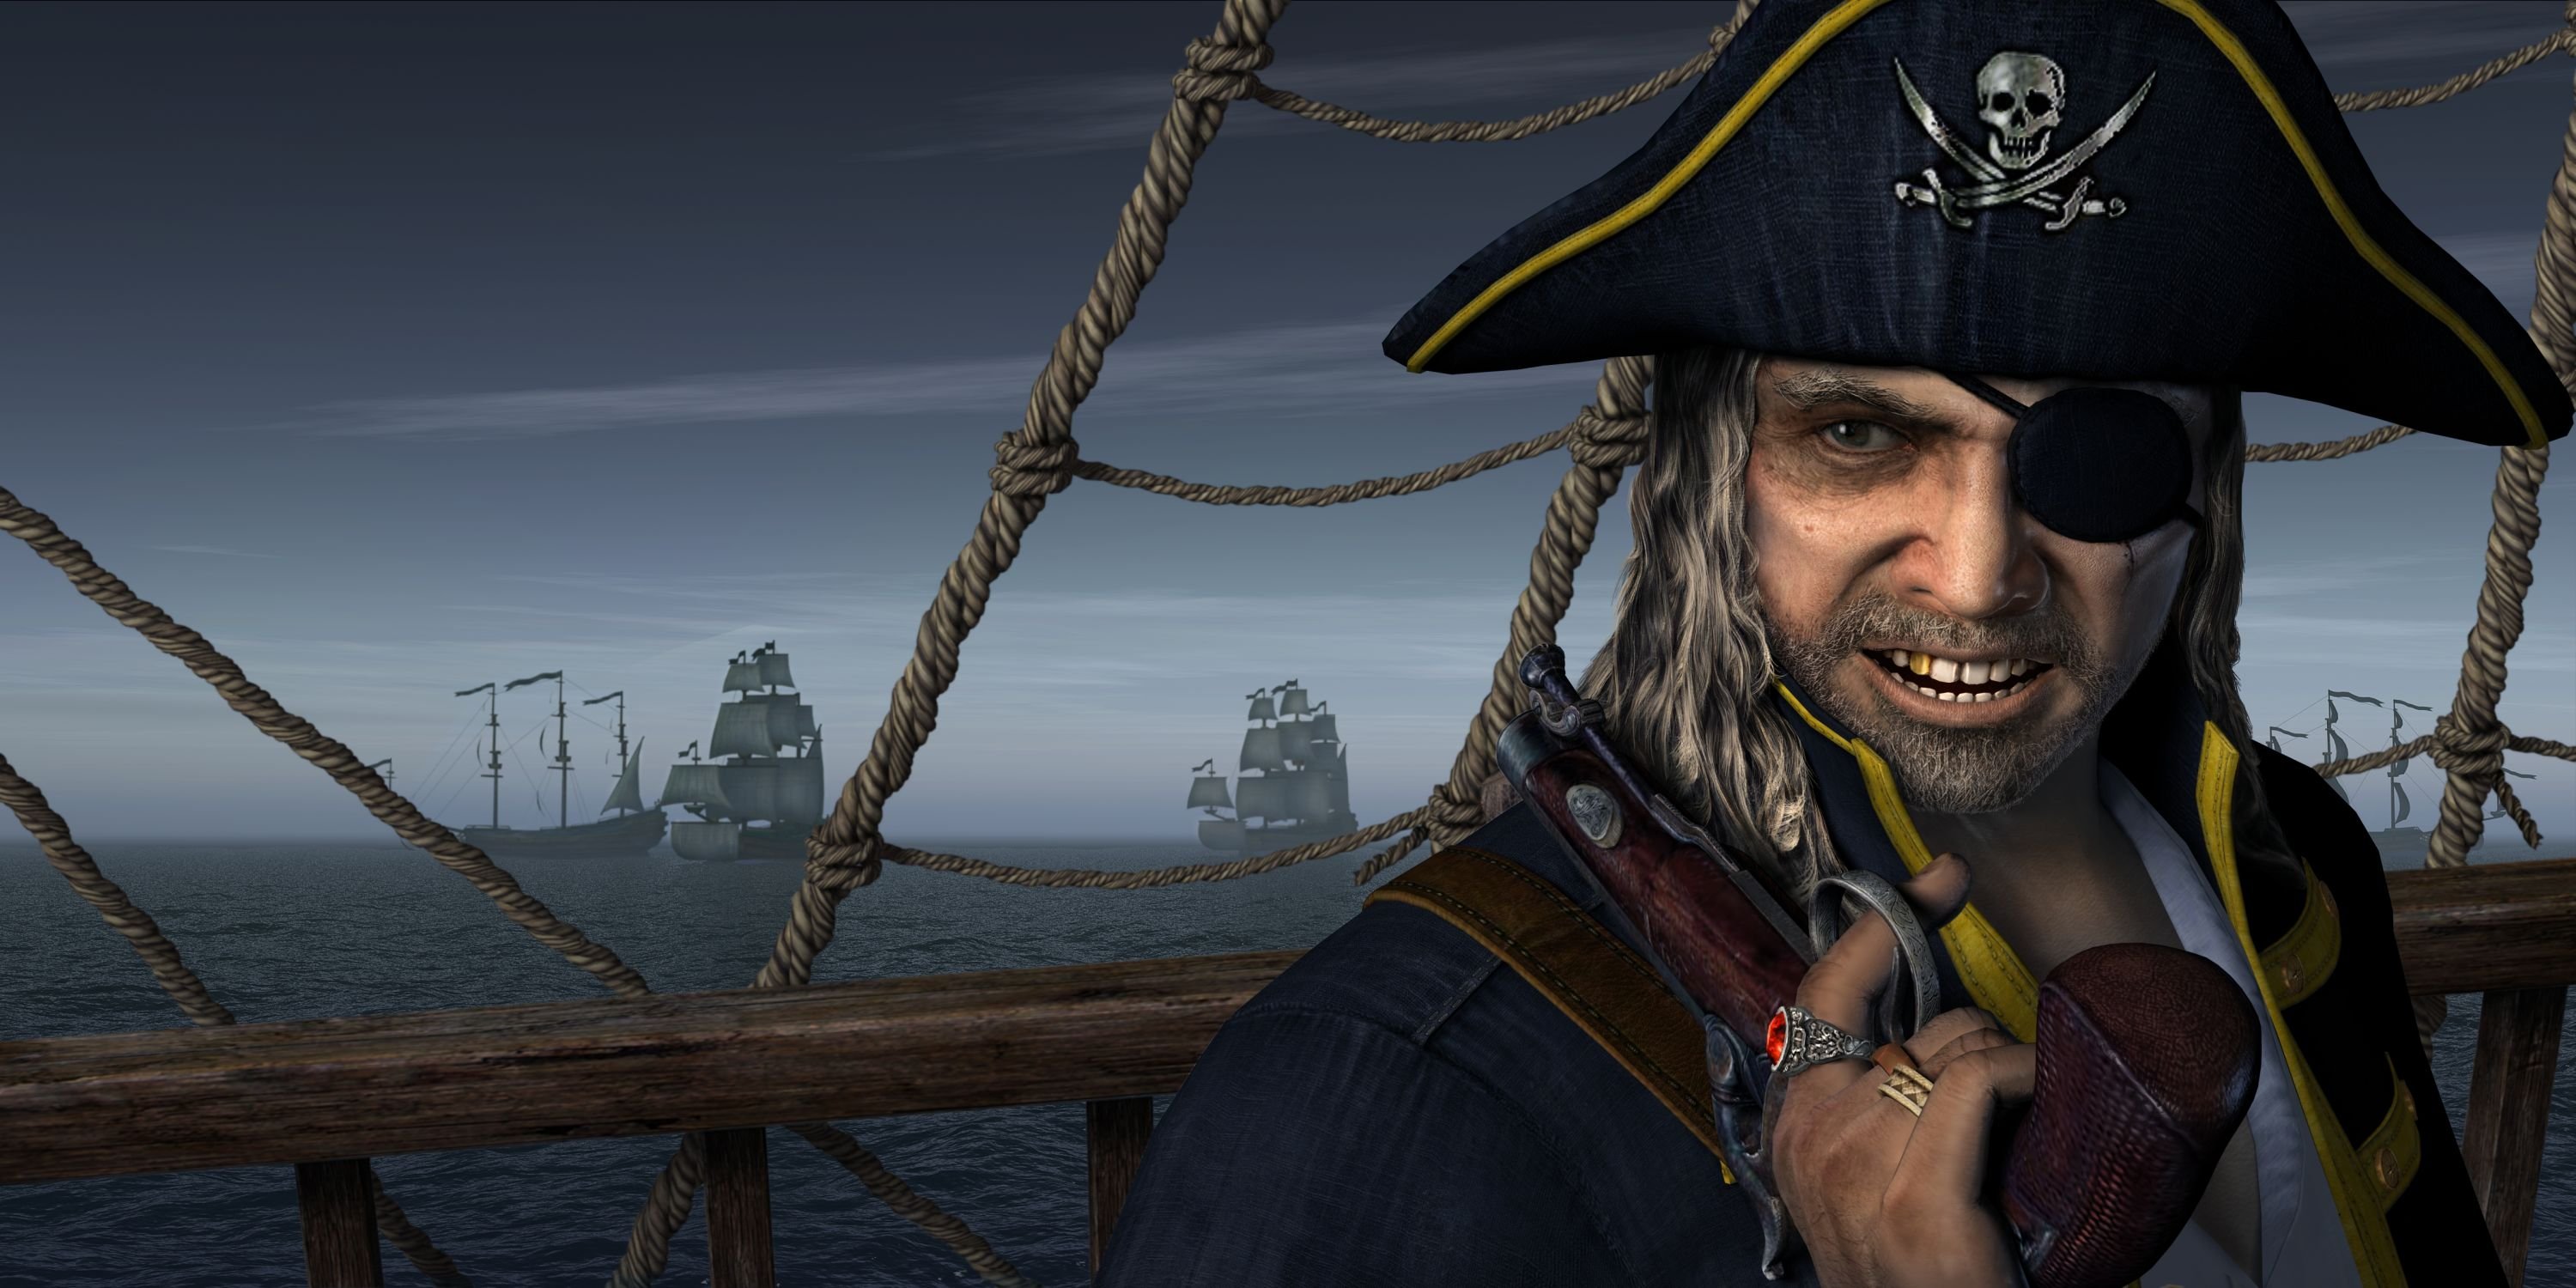 Включи пираты кари. Даниэль Монбар пират. Флибустьеры пираты Корсары. Джек Воробей одноглазый пират.